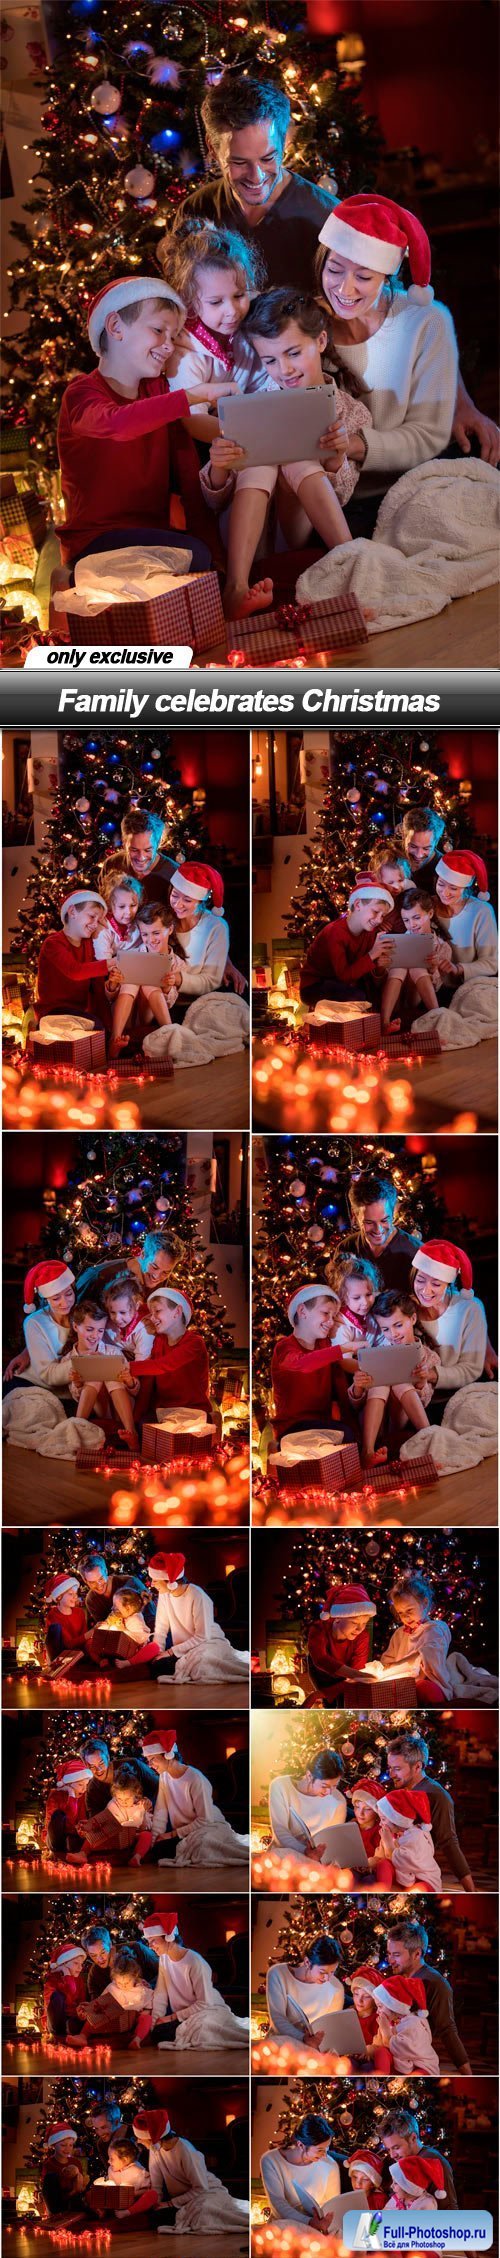 Family celebrates Christmas - 13 UHQ JPEG